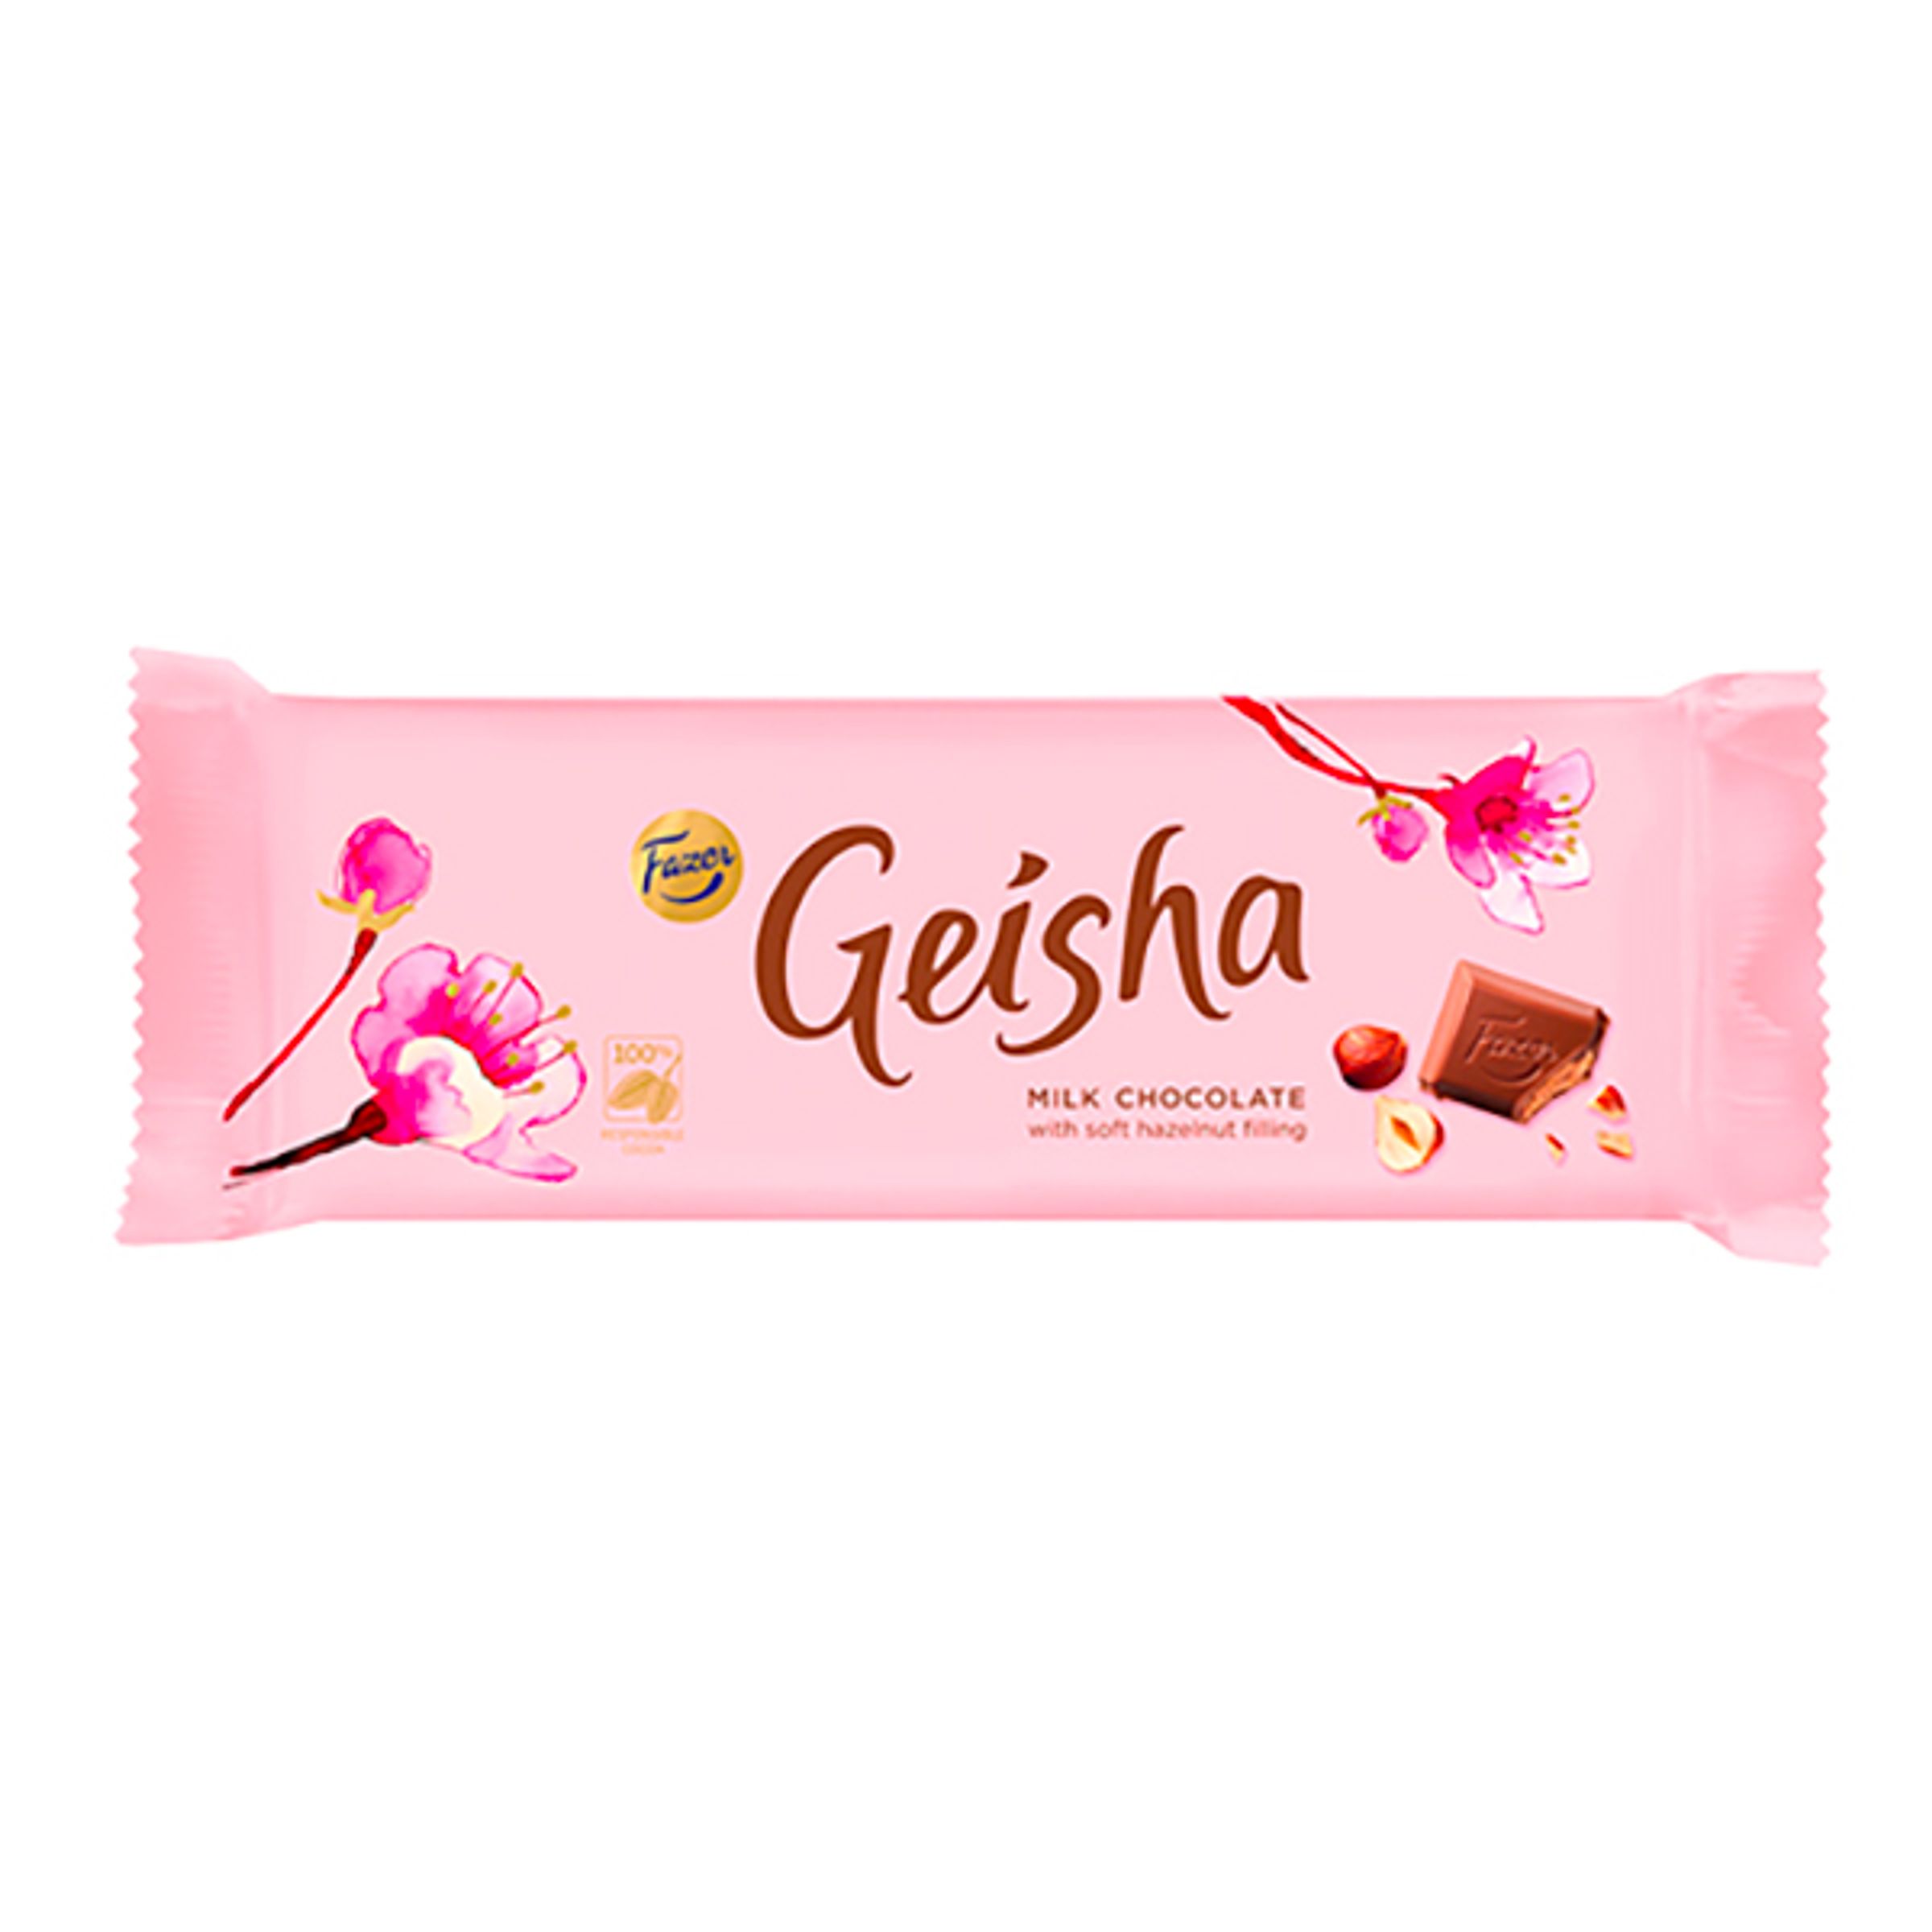 Geisha Chokladkaka - 62 gram